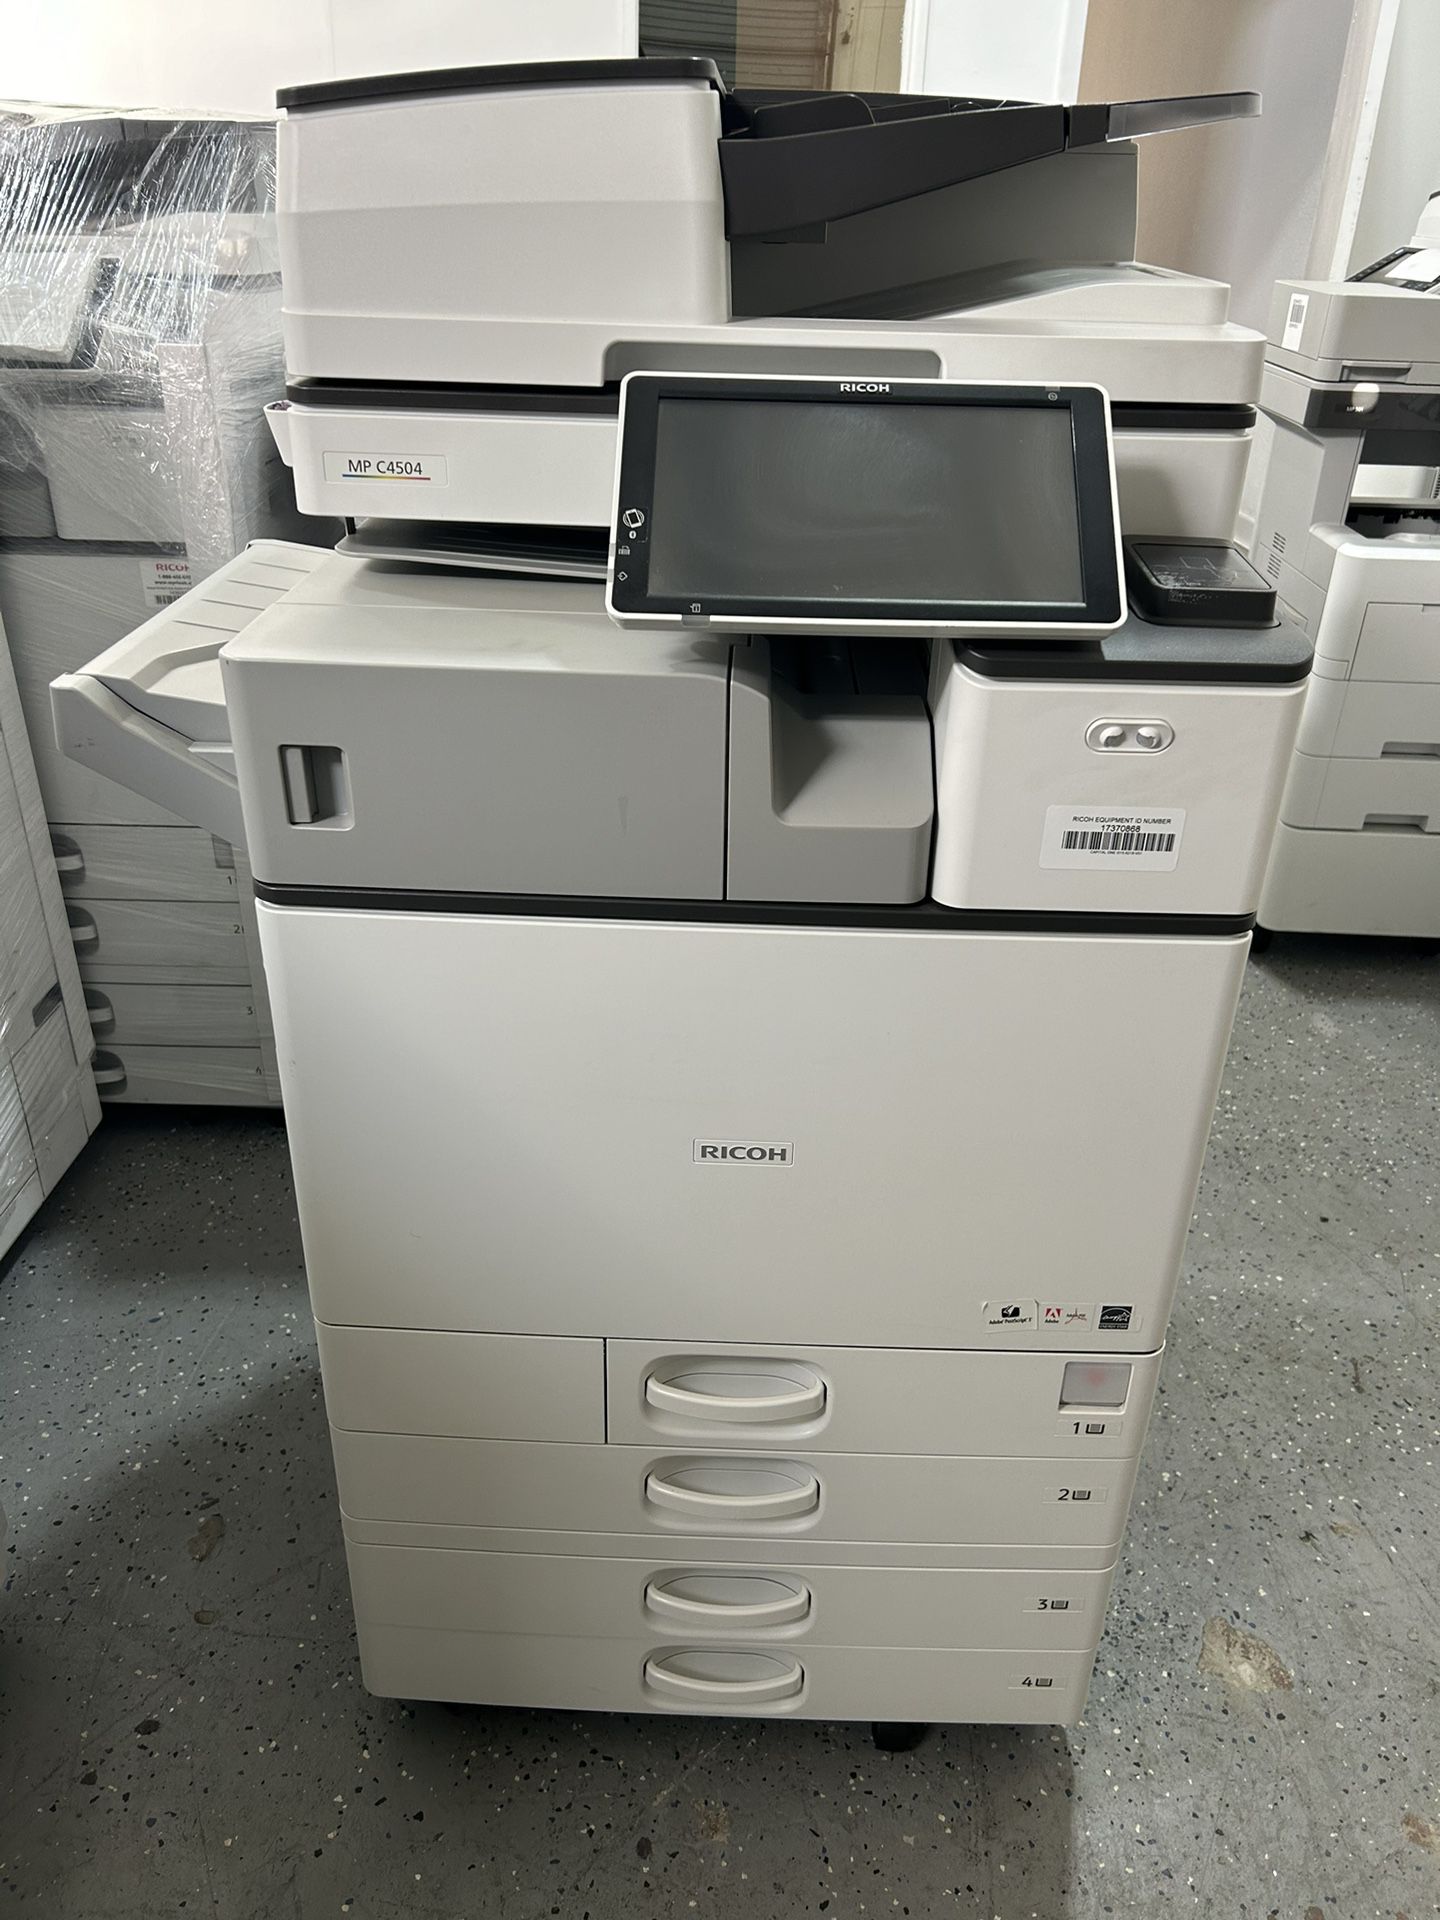 Office Printer Ricoh Mp C4504 Color Copier Machine Laser